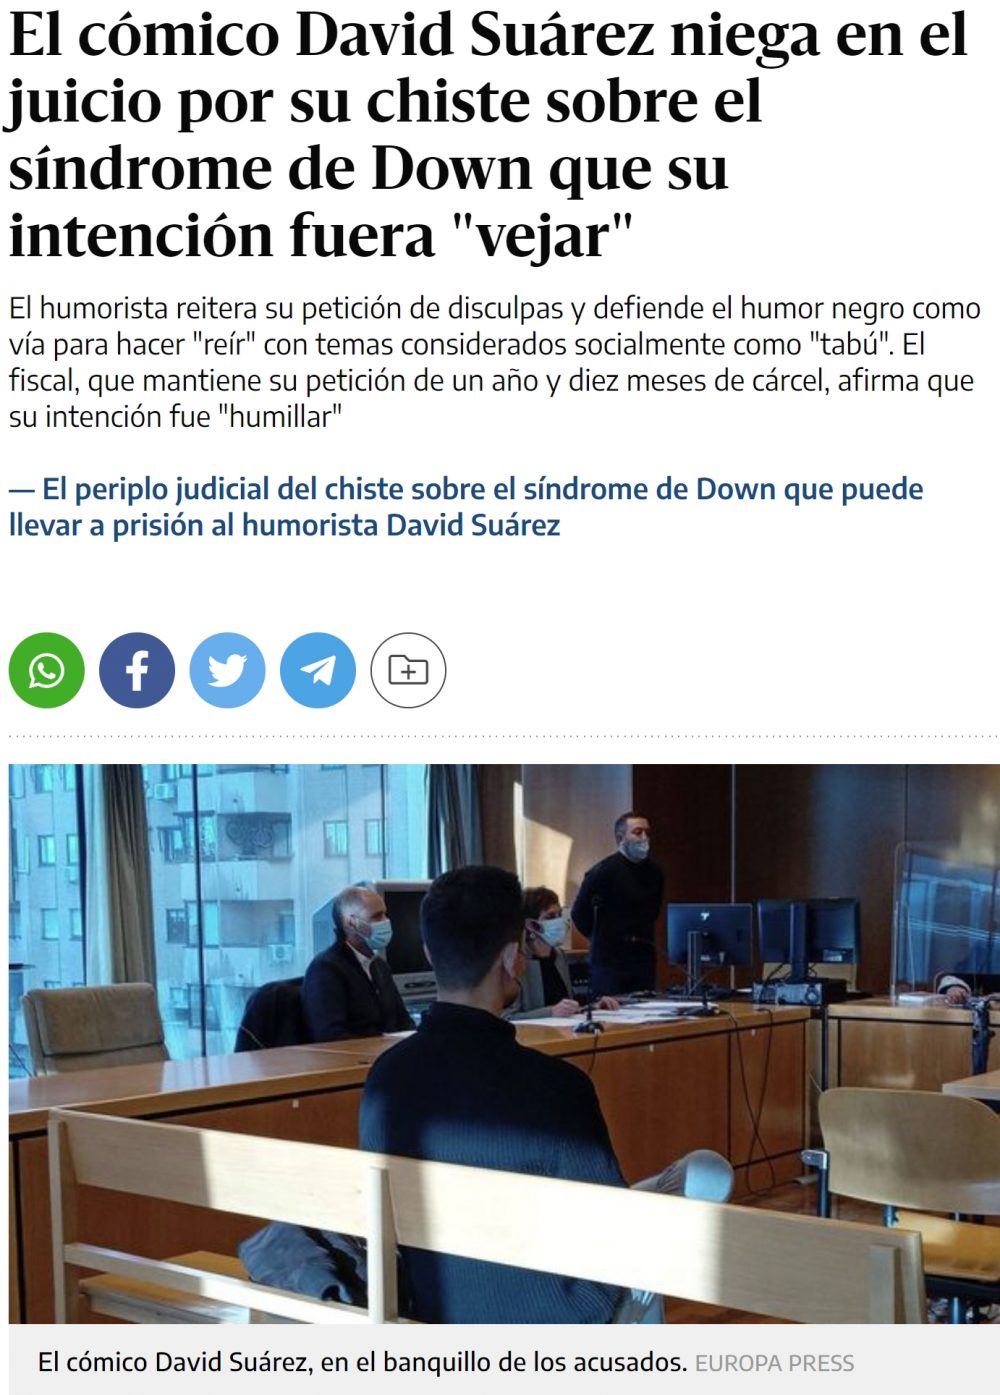 David Suárez se sienta en el banquillo de los acusados por su chiste protagonizado por una chica ficticia con síndrome de Down